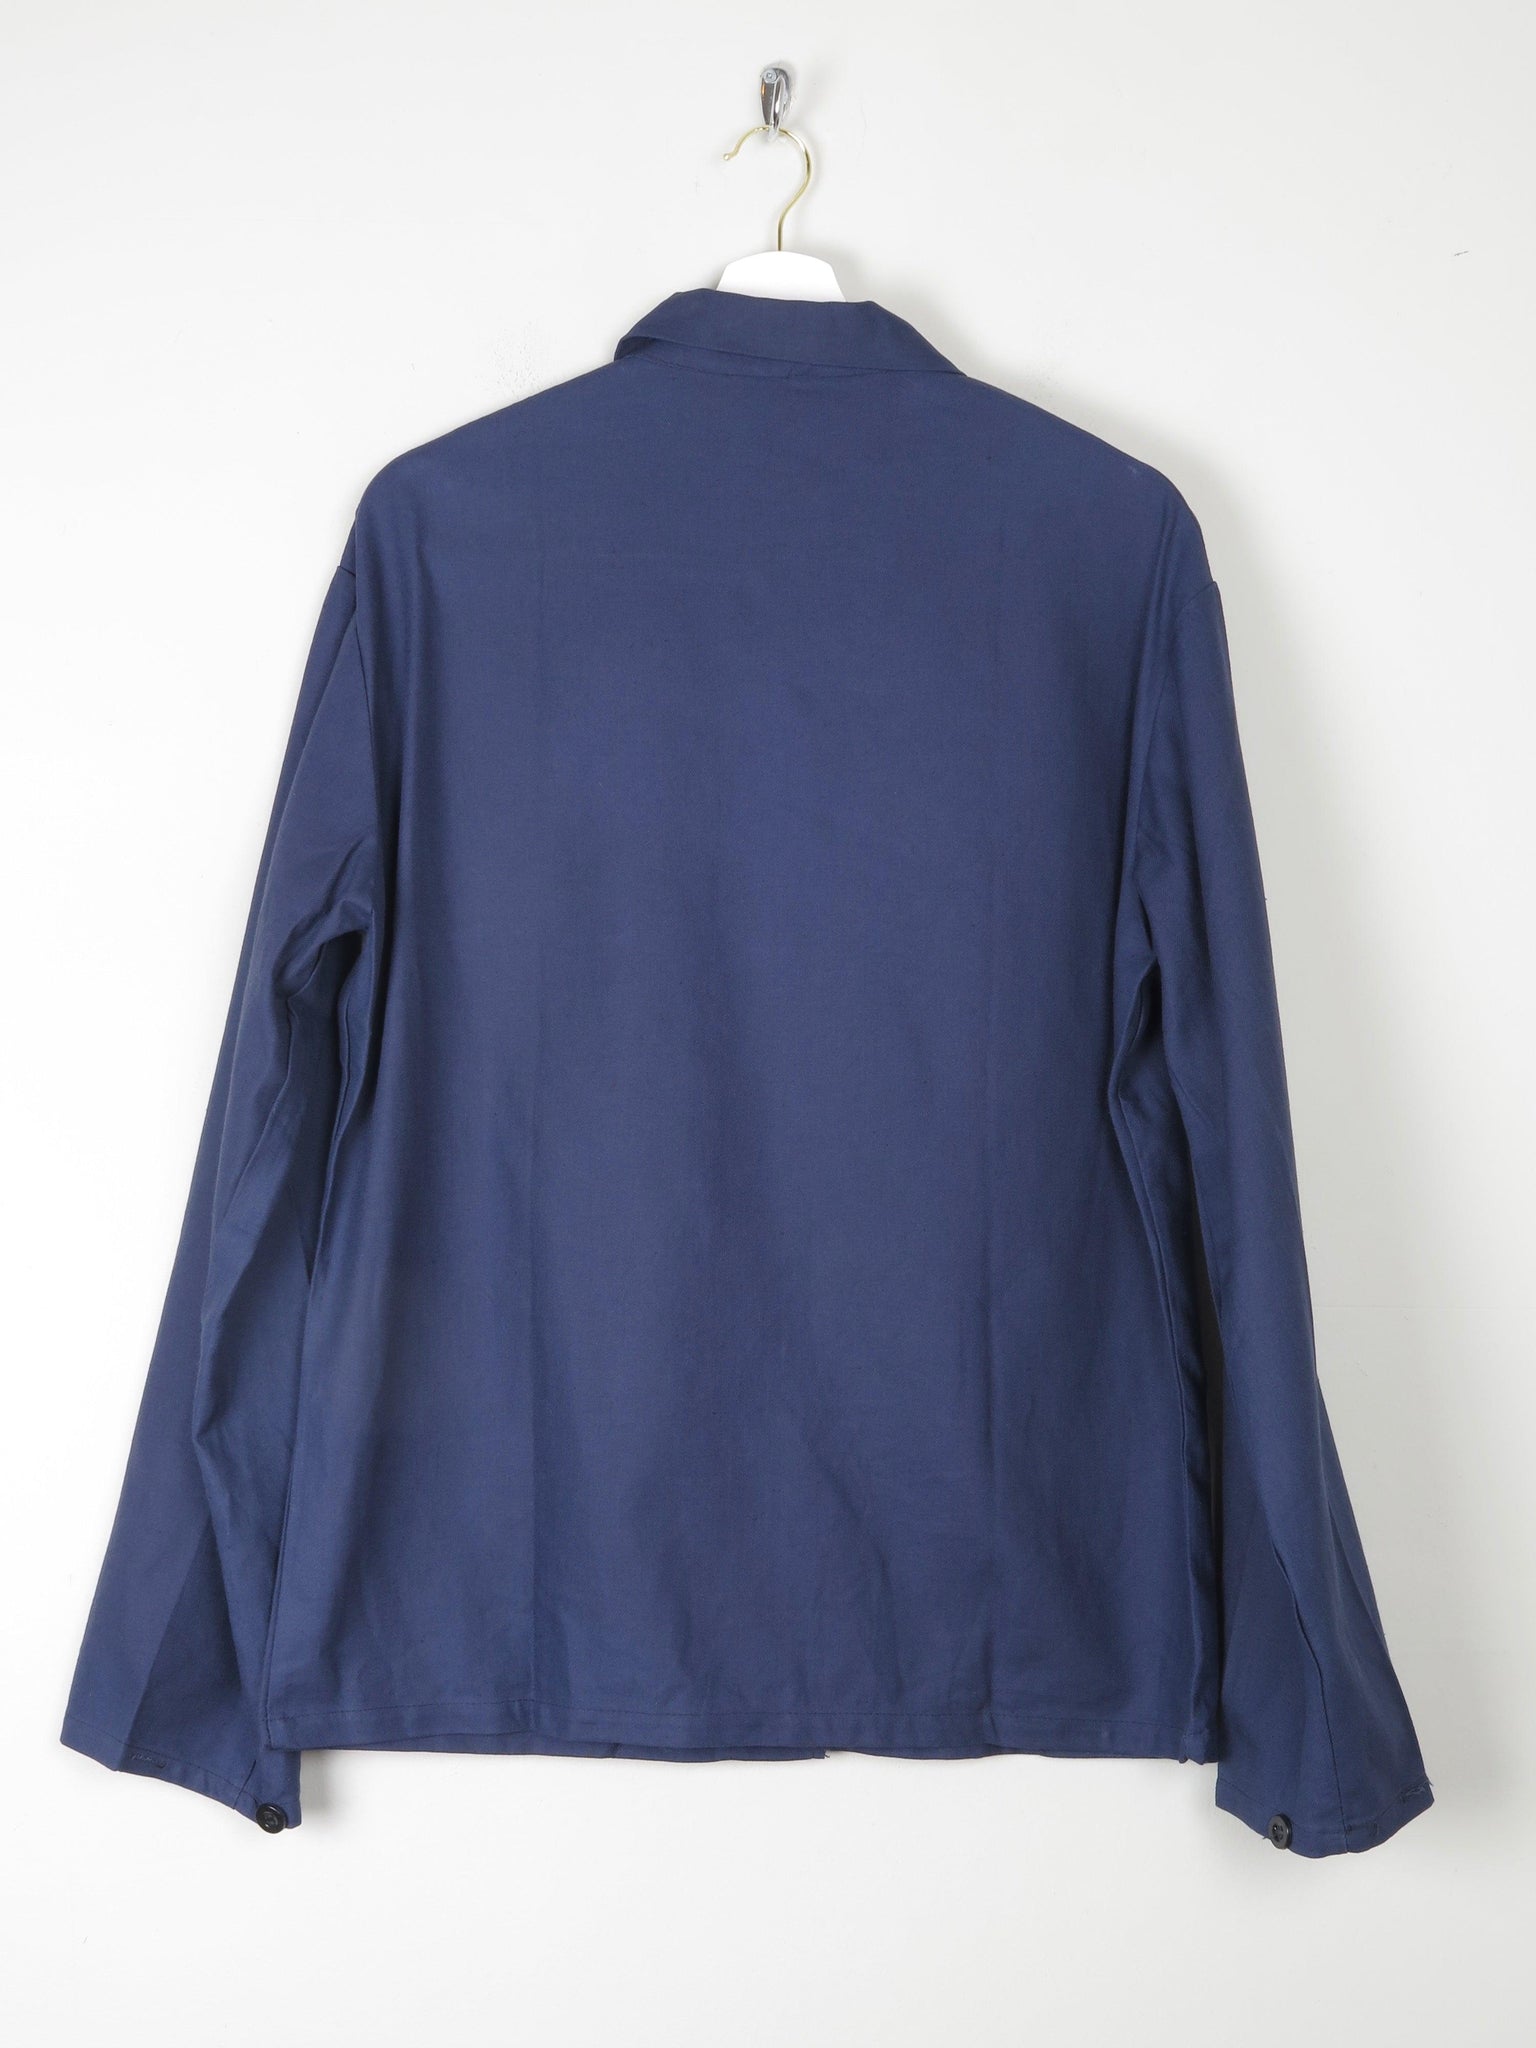 Men's Indigo Blue Vintage Work Jacket S - The Harlequin